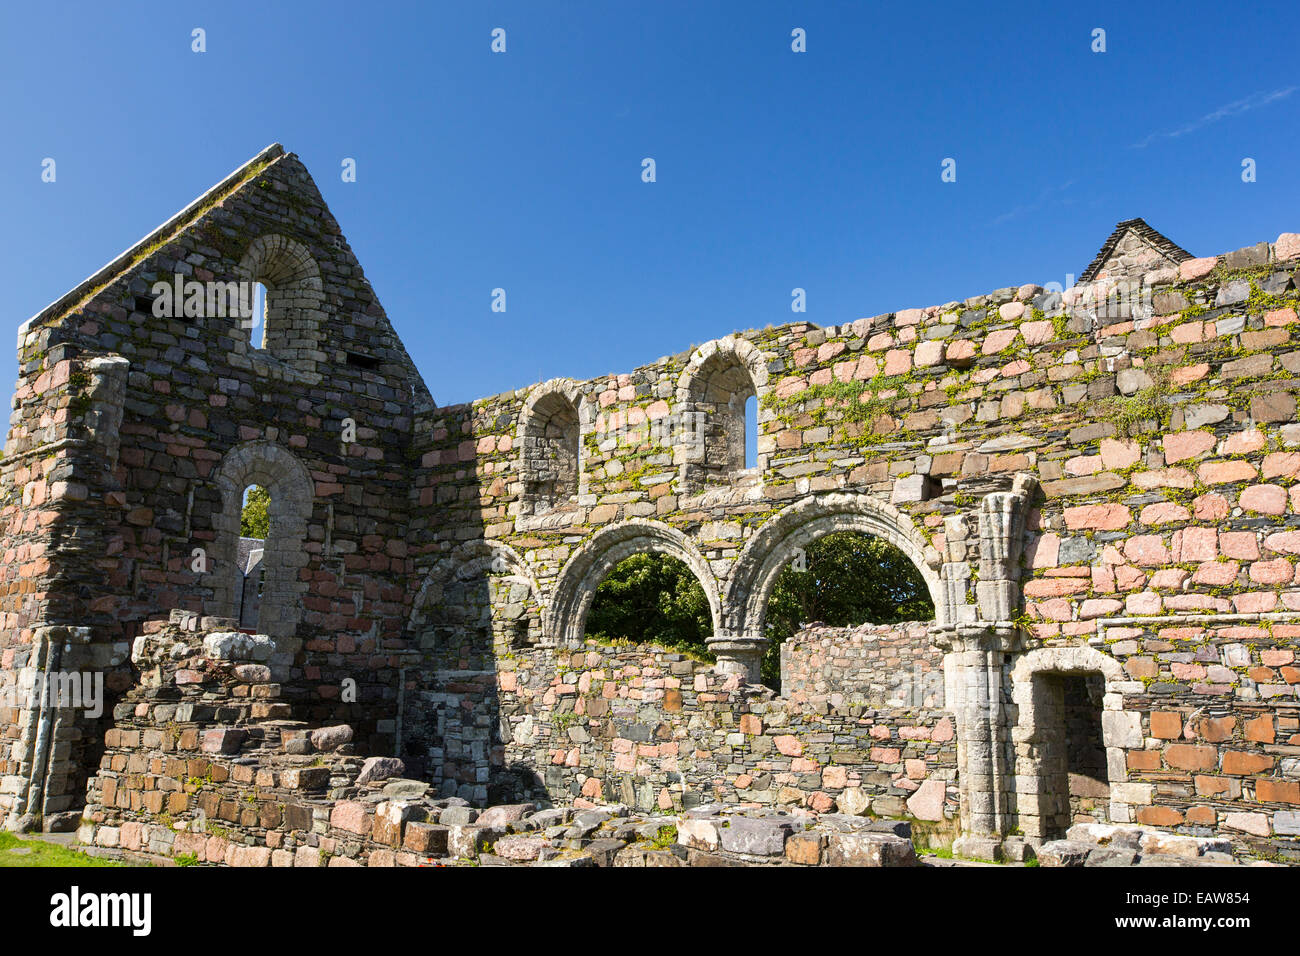 Die Augustiner mittelalterlichen Kloster auf der Insel Iona, ist es das älteste erhaltene Kloster auf den britischen Inseln, gebaut um 1203. Stockfoto